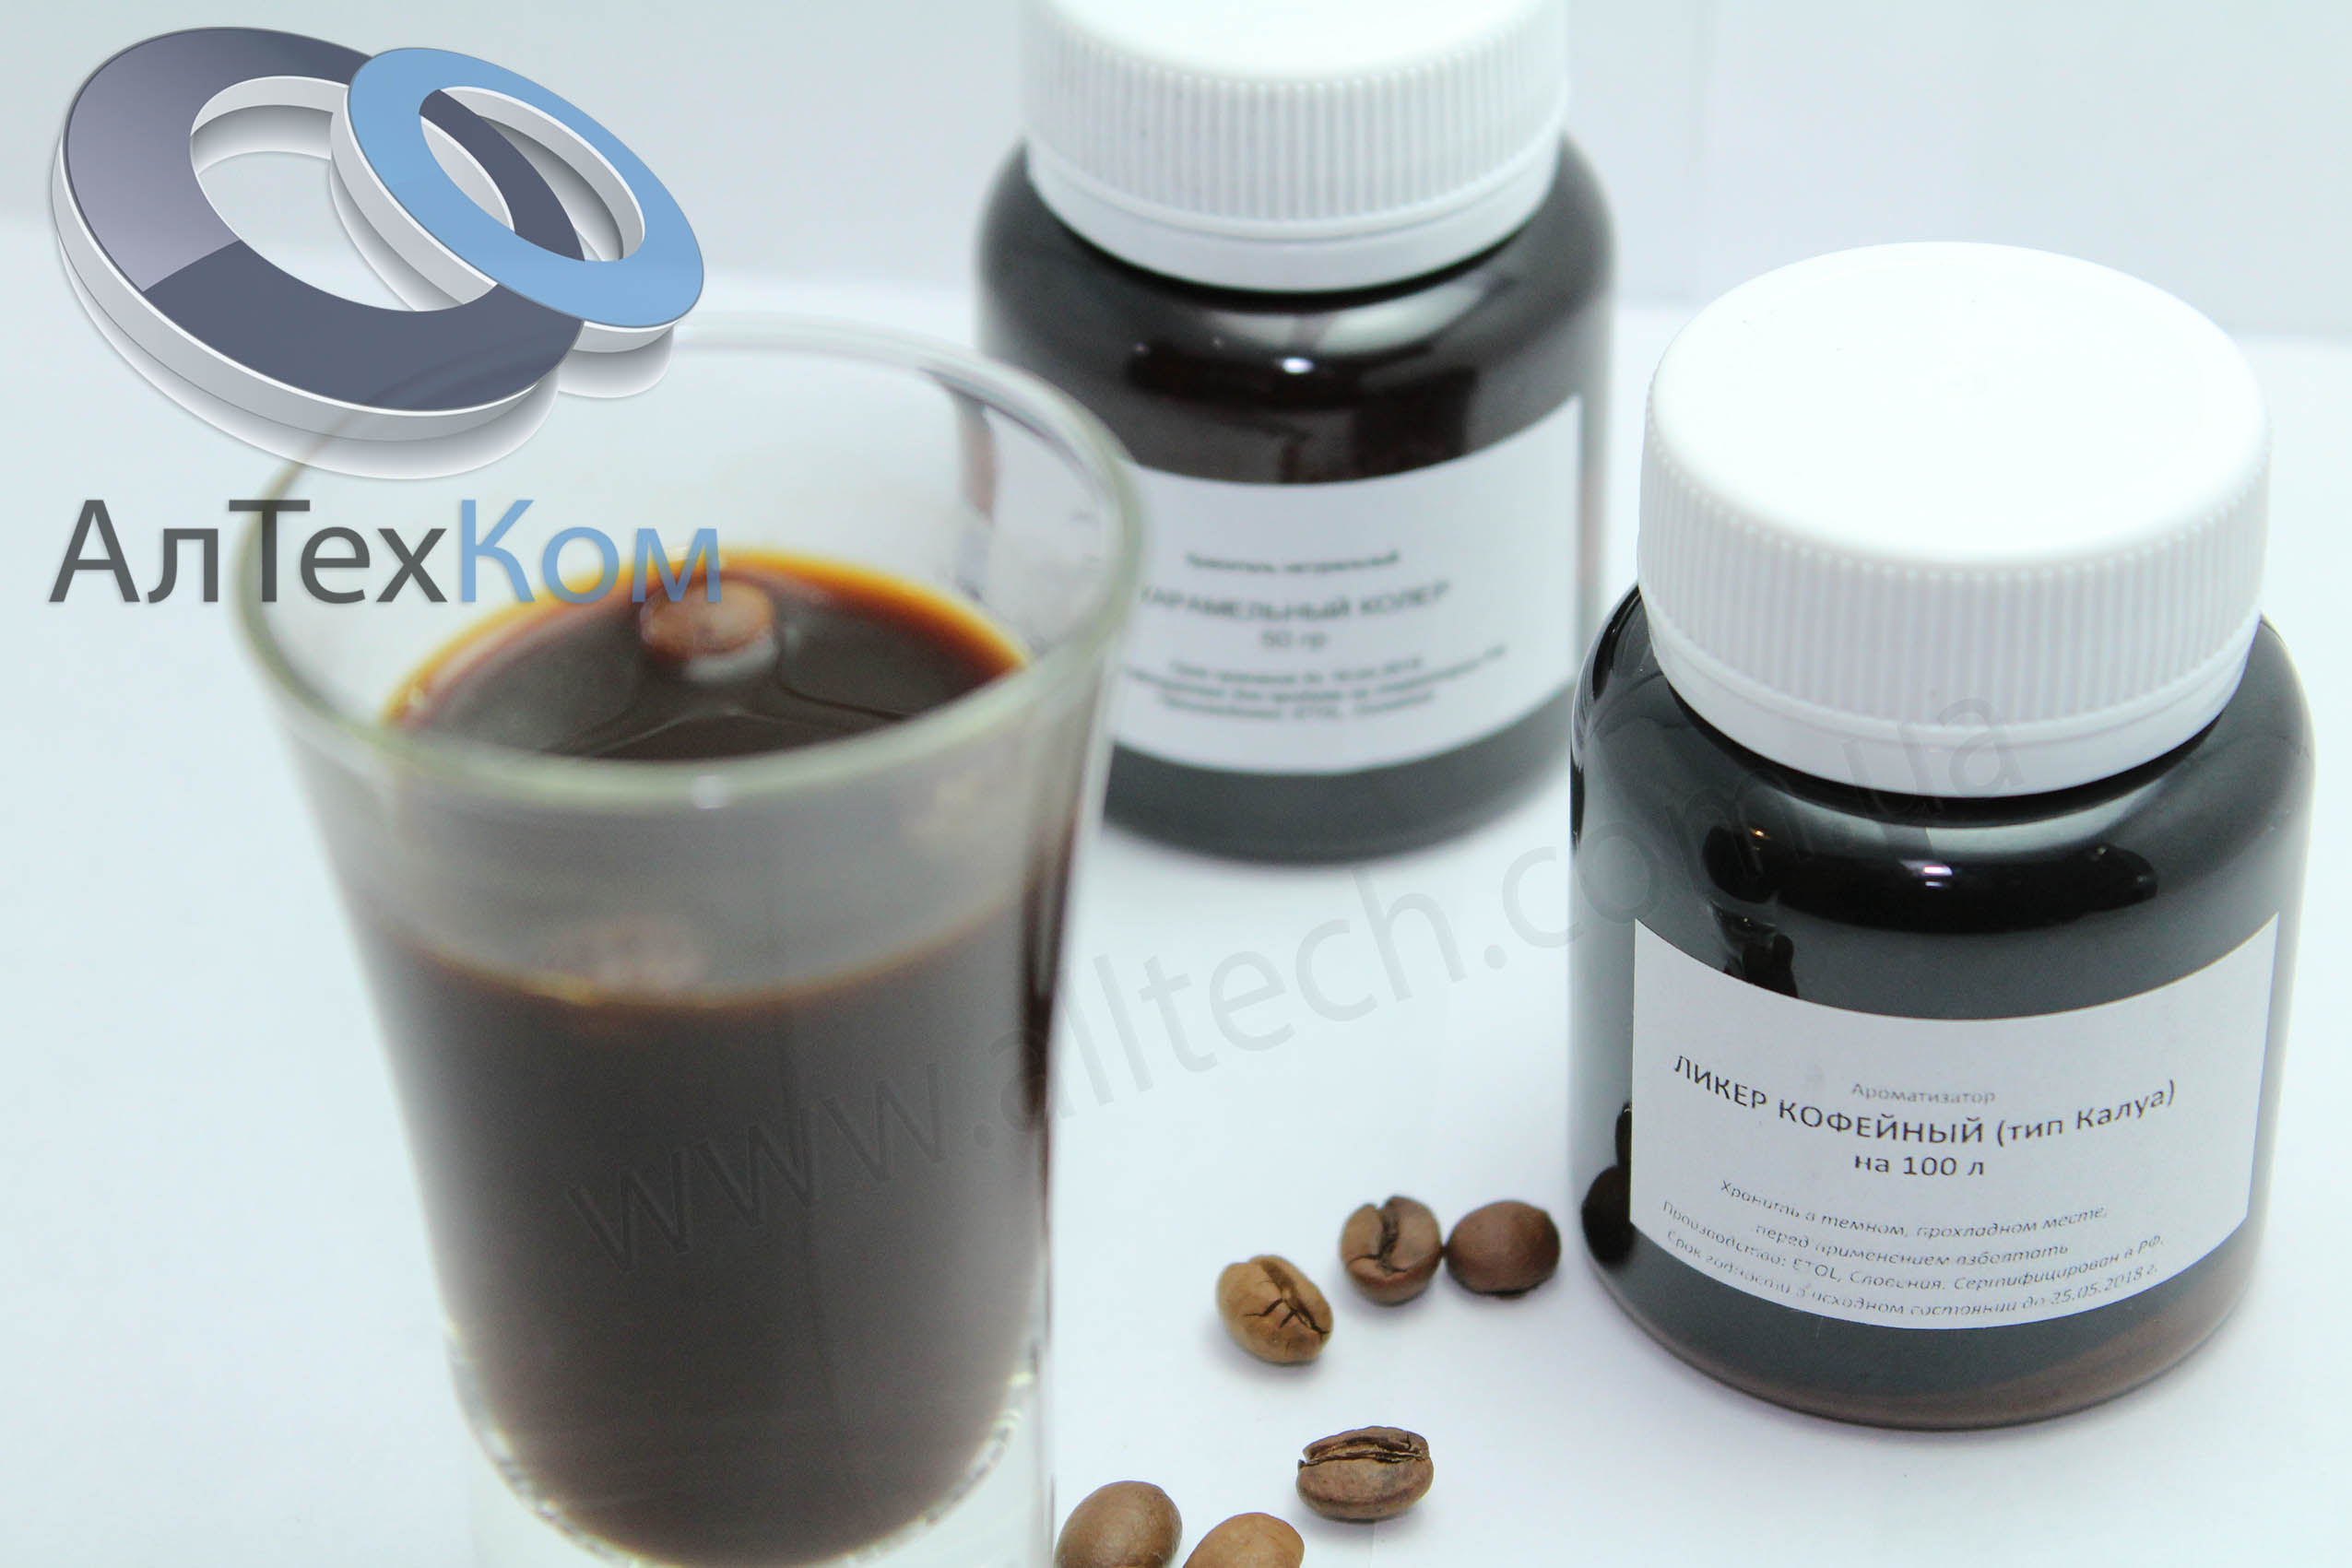 ароматизатор ликер кофейный (тип Калуа) на 100 литров